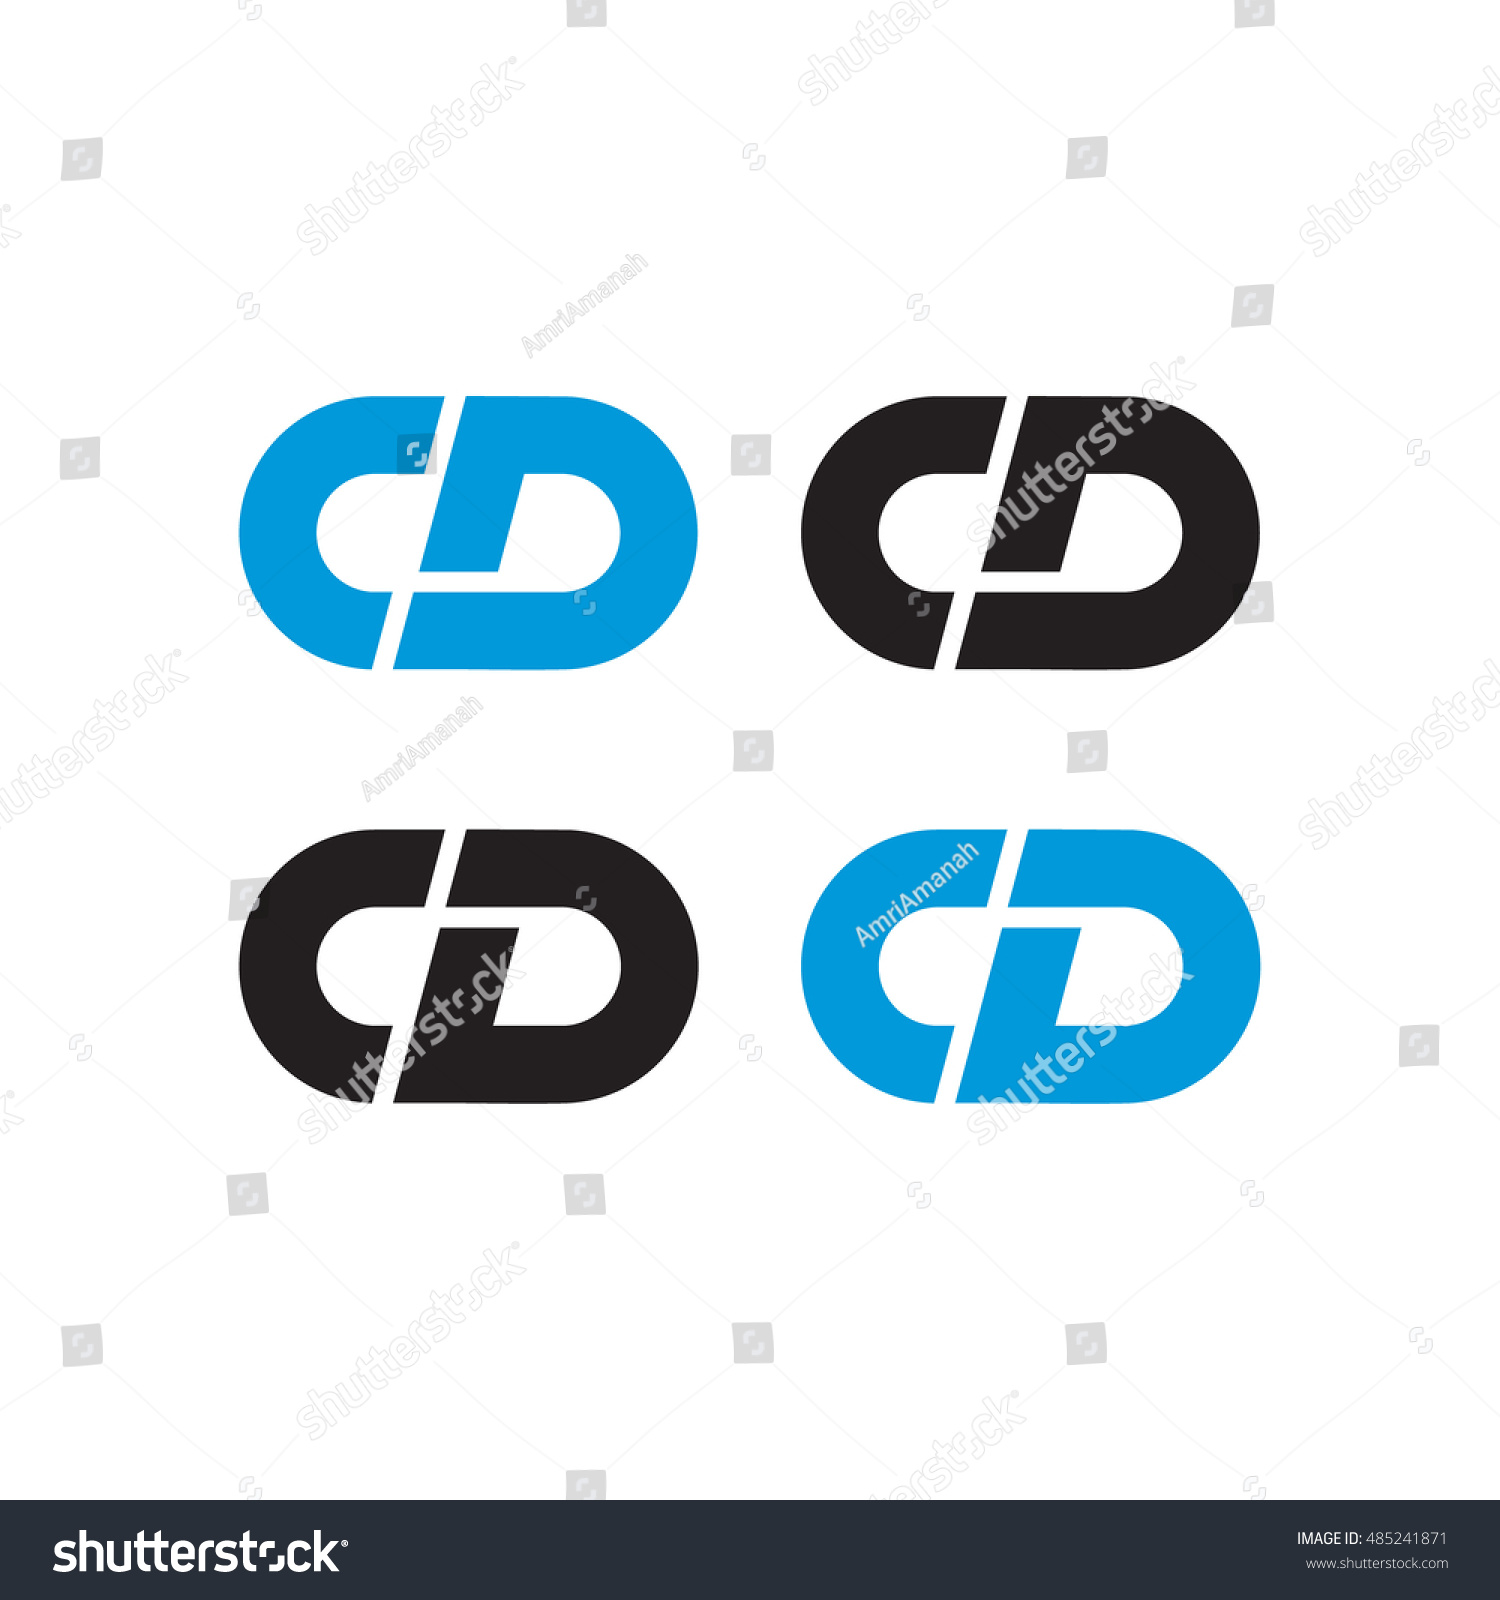 Cd Logo Stock Vector 485241871 - Shutterstock